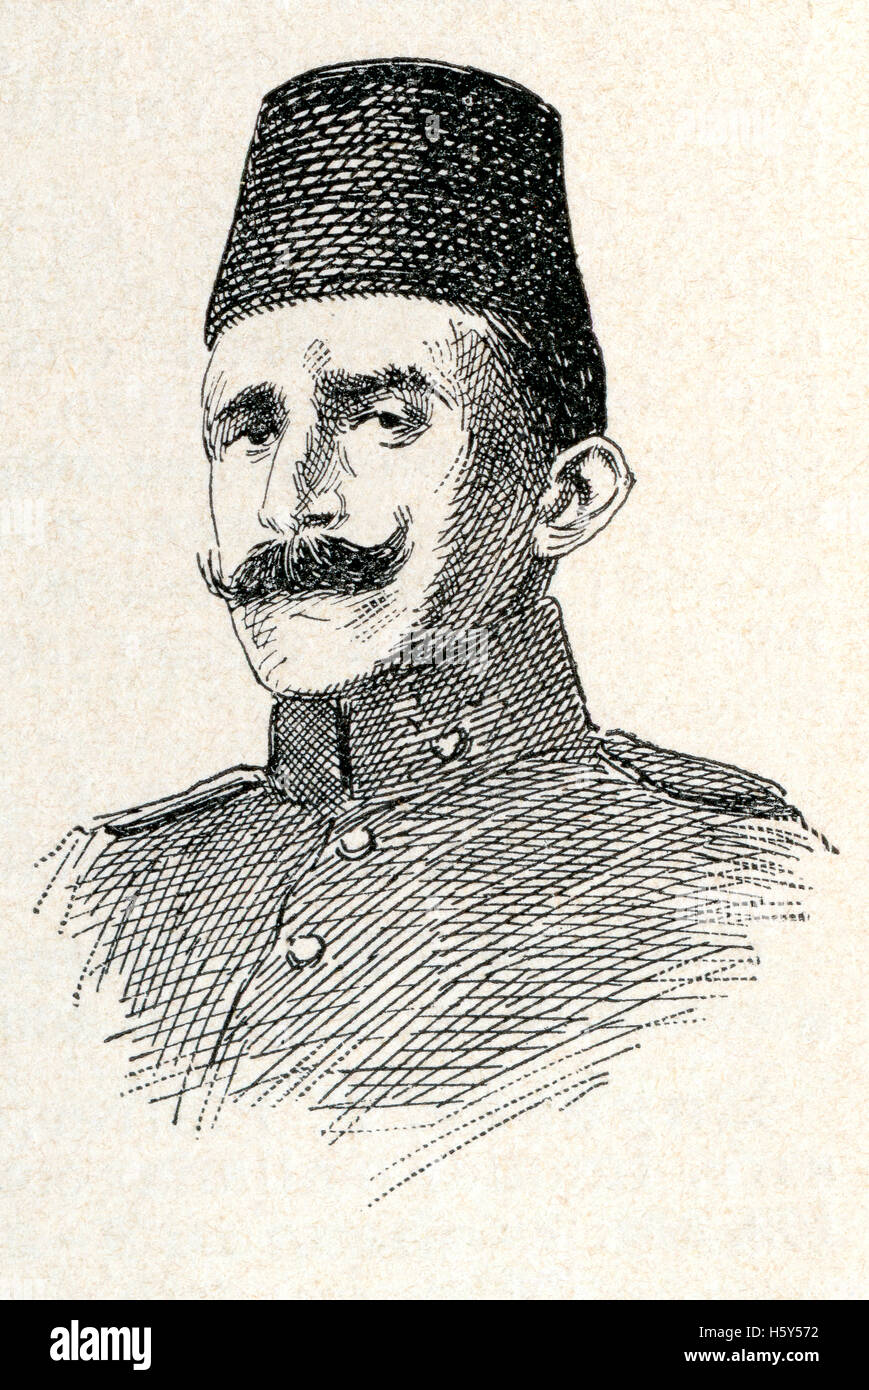 Ismail Enver Pascià, 1881 - 1922. Ottoman ufficiale militare e un leader del 1908 giovani Turk rivoluzione. Foto Stock